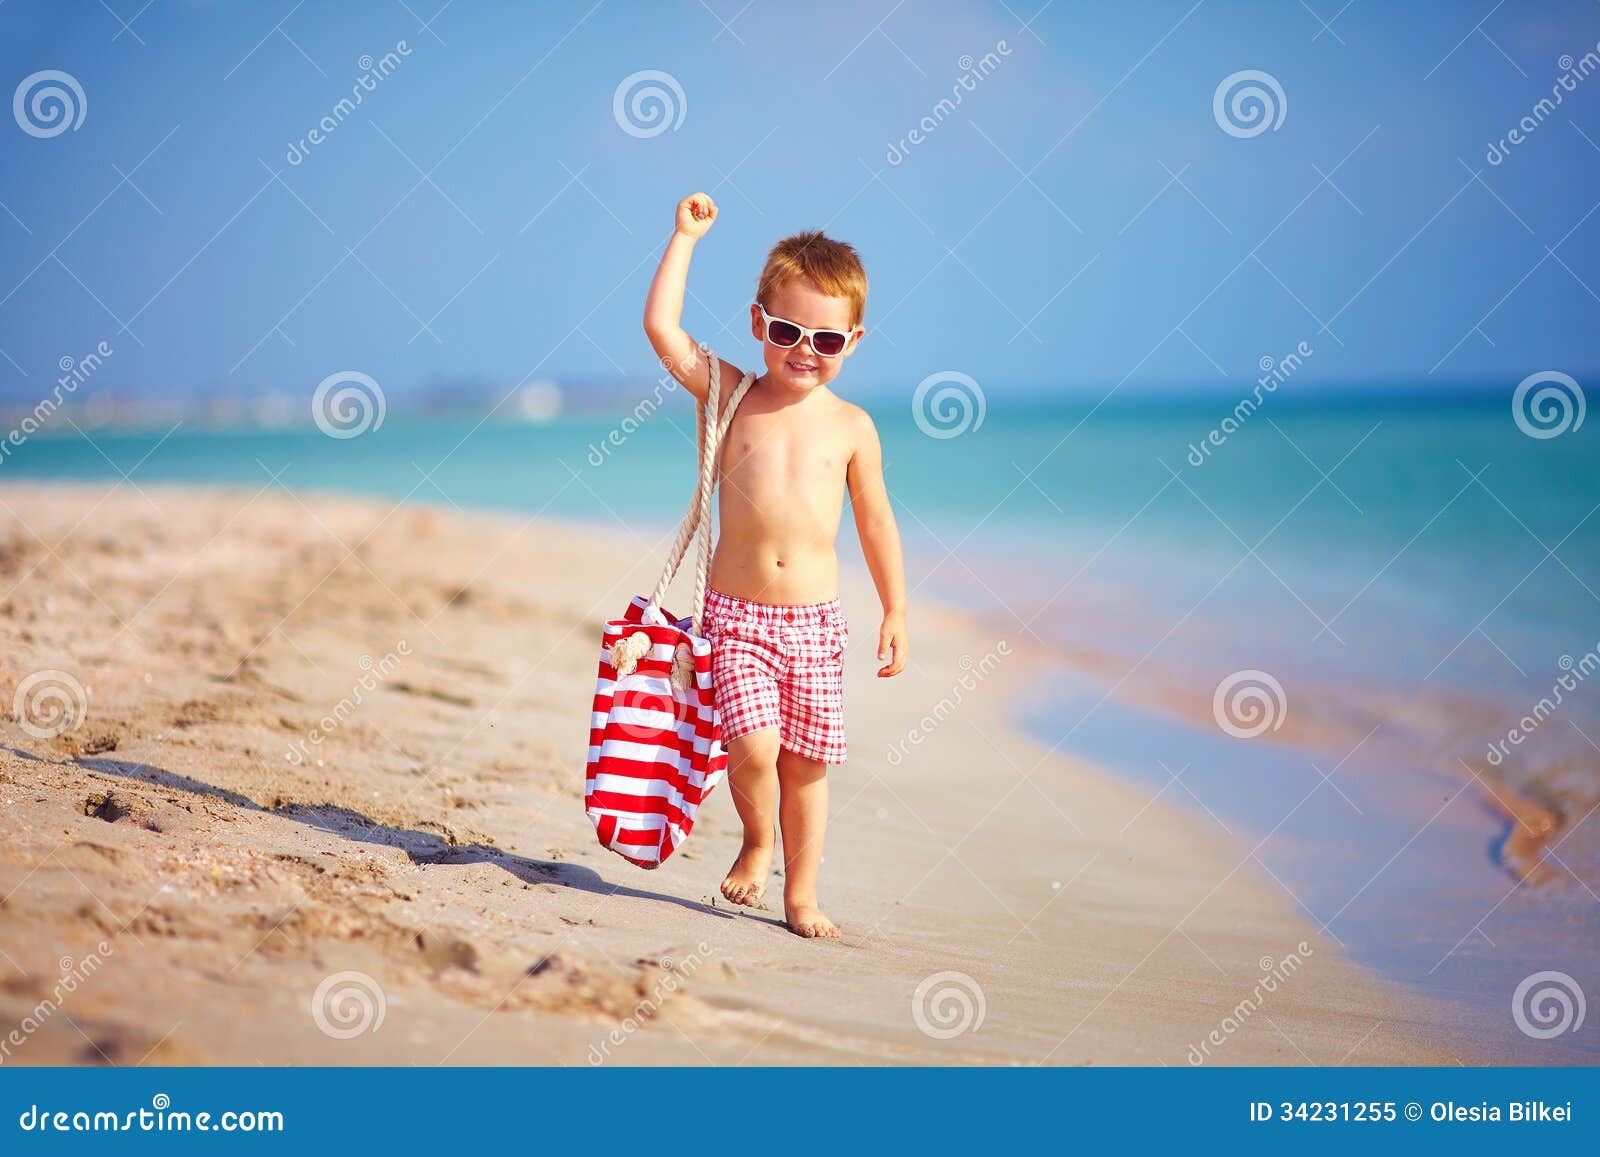 小男孩在沙滩上用铲子在沙地上挖洞照片摄影图片_ID:428638191-Veer图库